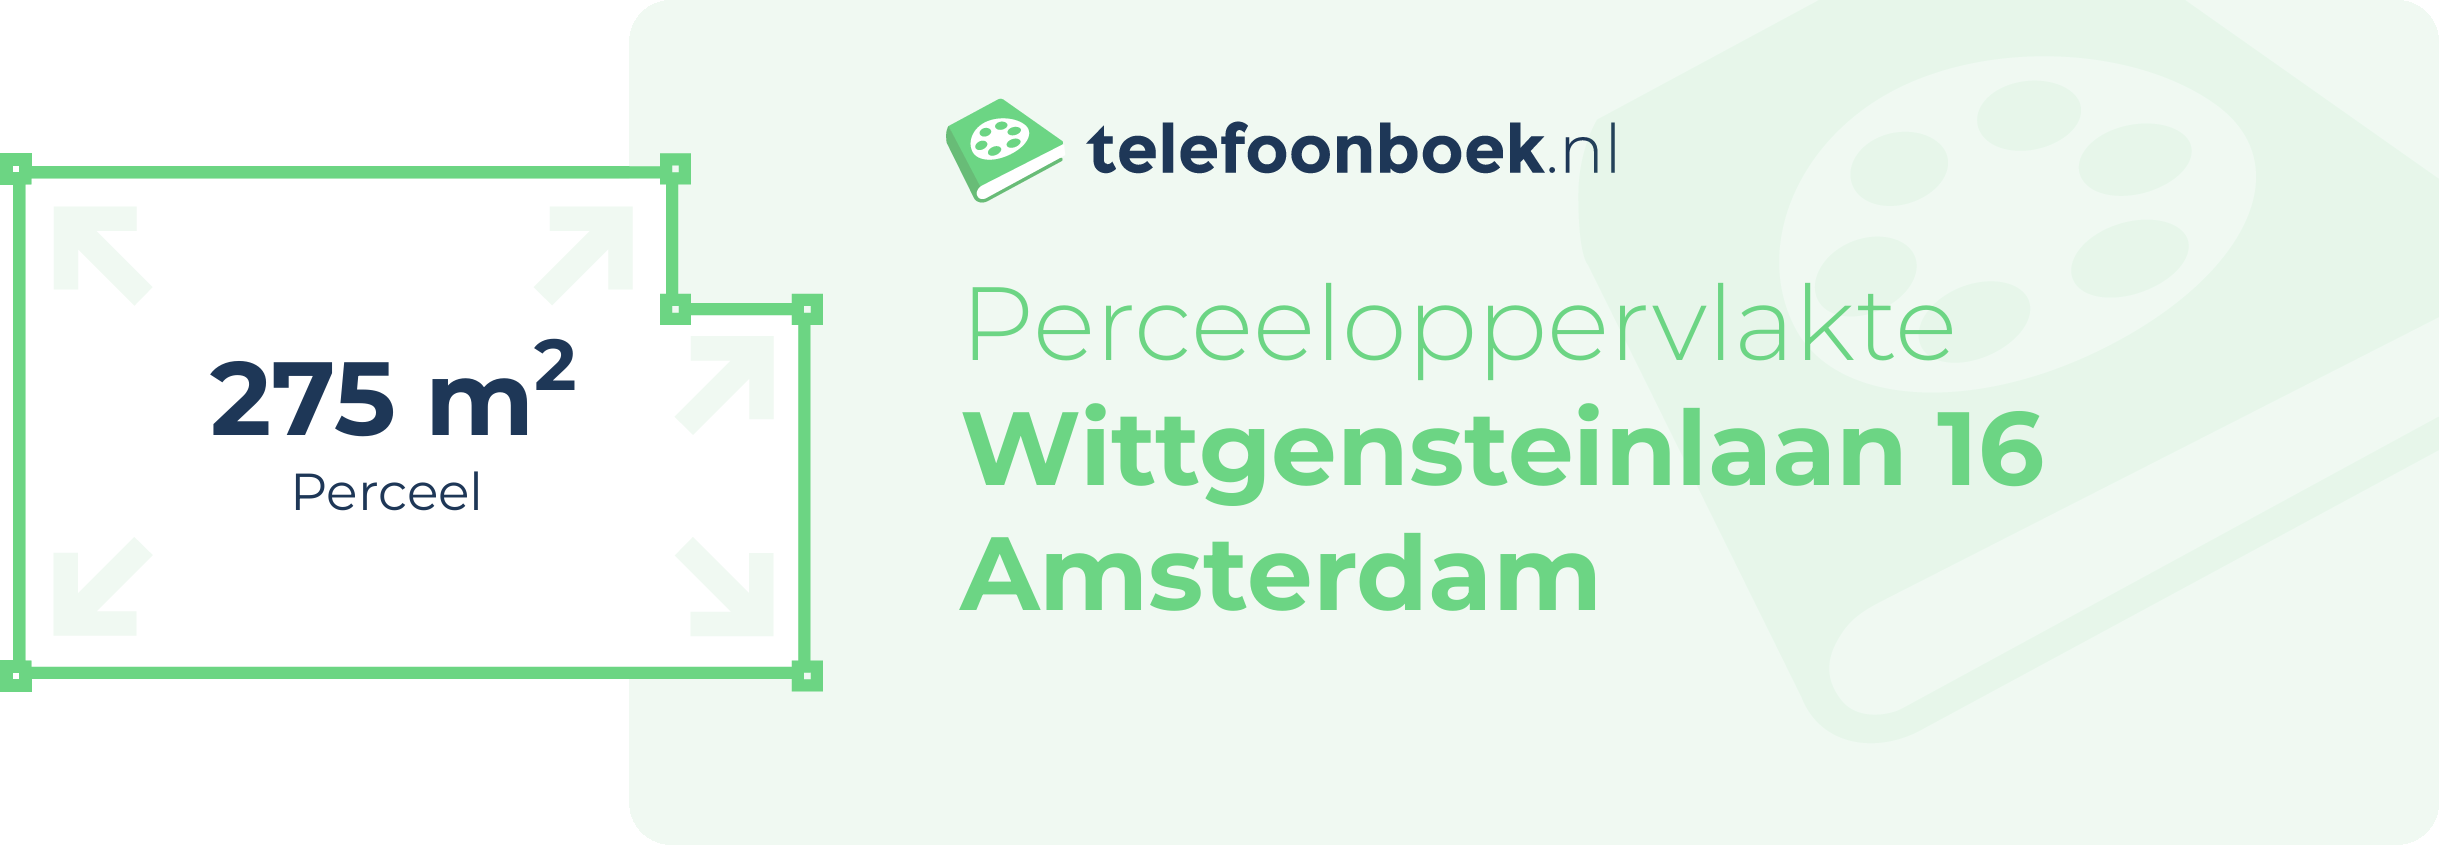 Perceeloppervlakte Wittgensteinlaan 16 Amsterdam